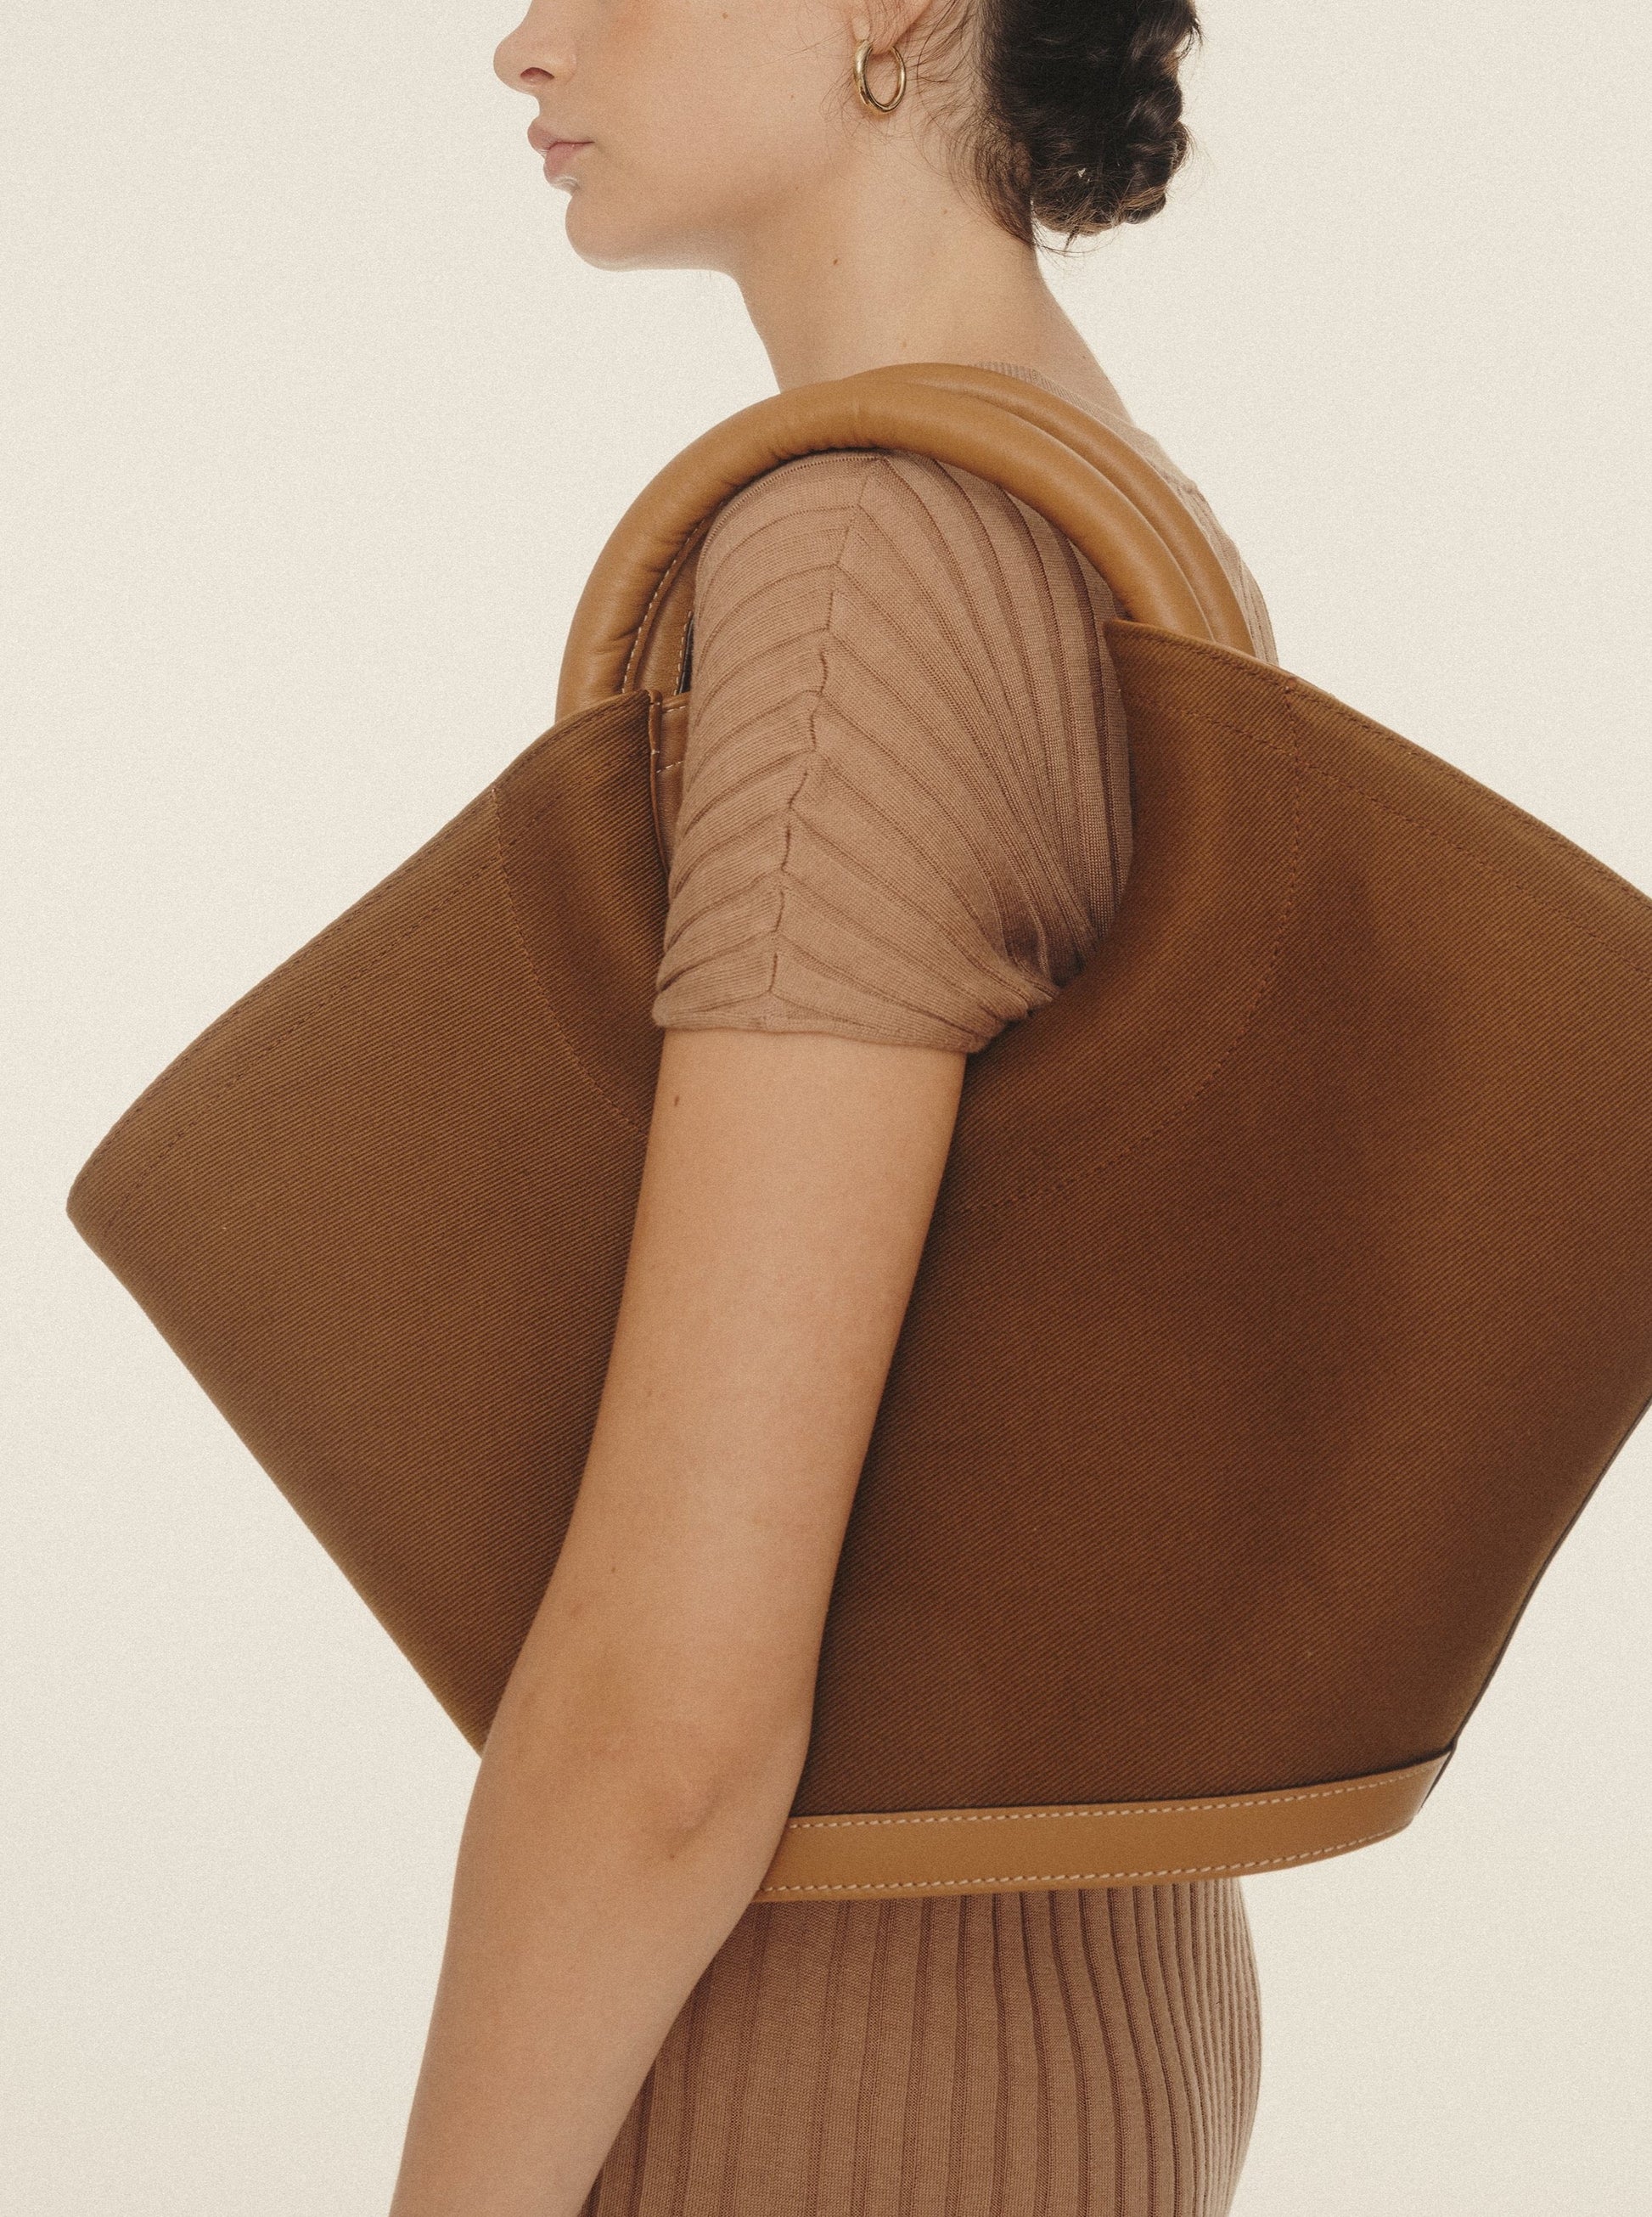 CABASSA - Round-handle Leather Tote Bag – Hereu Studio